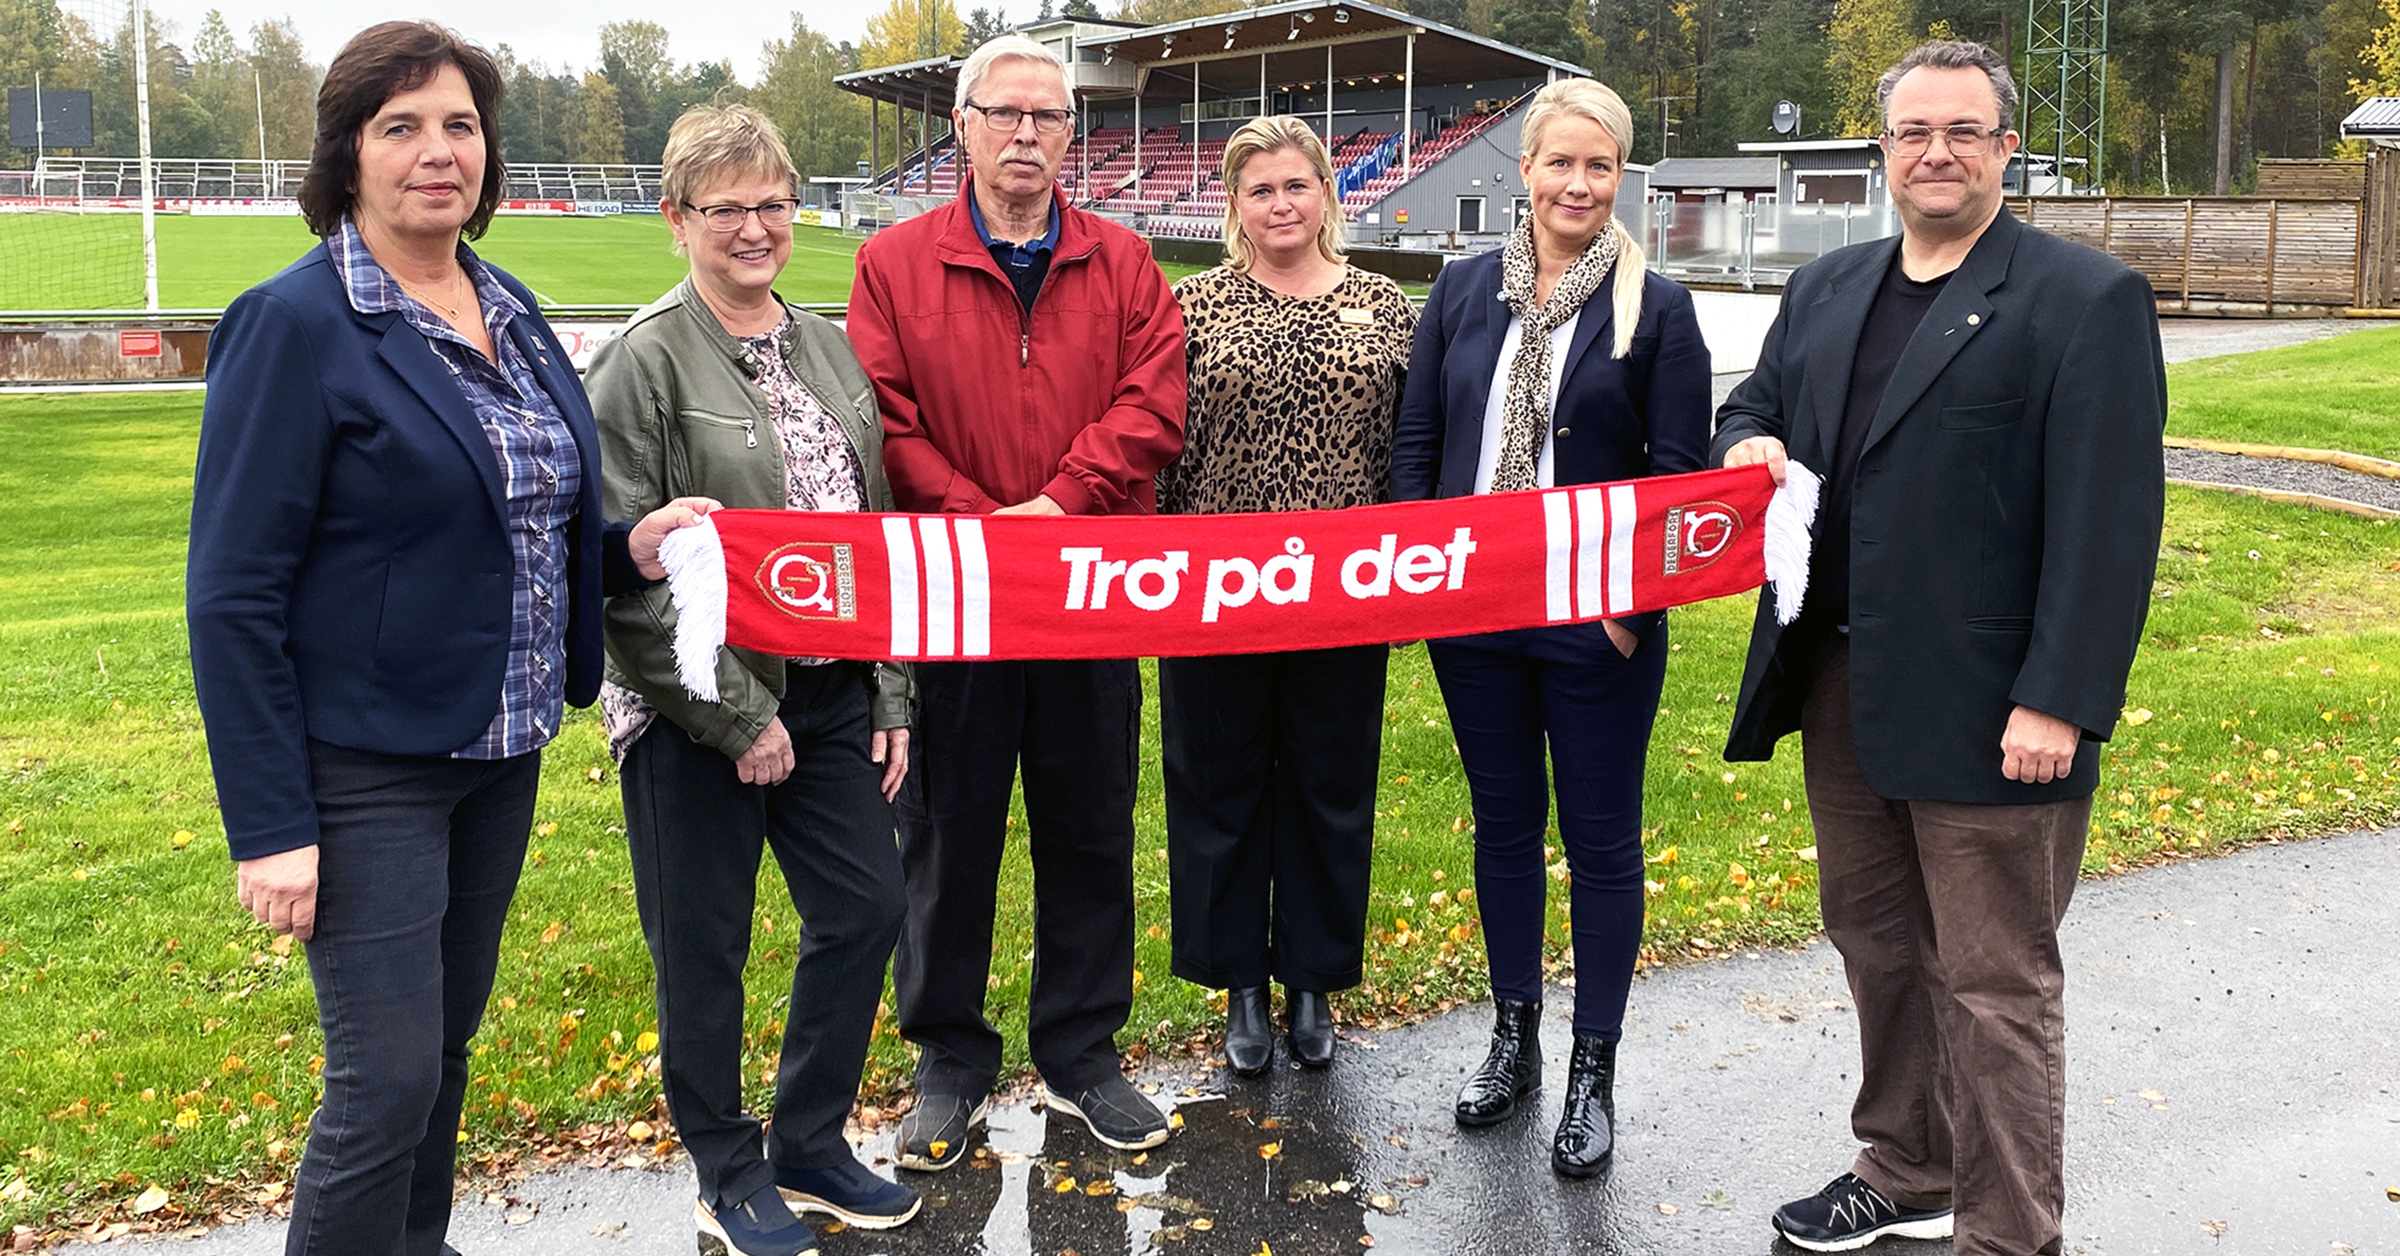 Degerfors kommuns politiska ledning håller tillsammans med Degerfors IFs ordförande i en röd-vit halsduk med texten Tro på det.